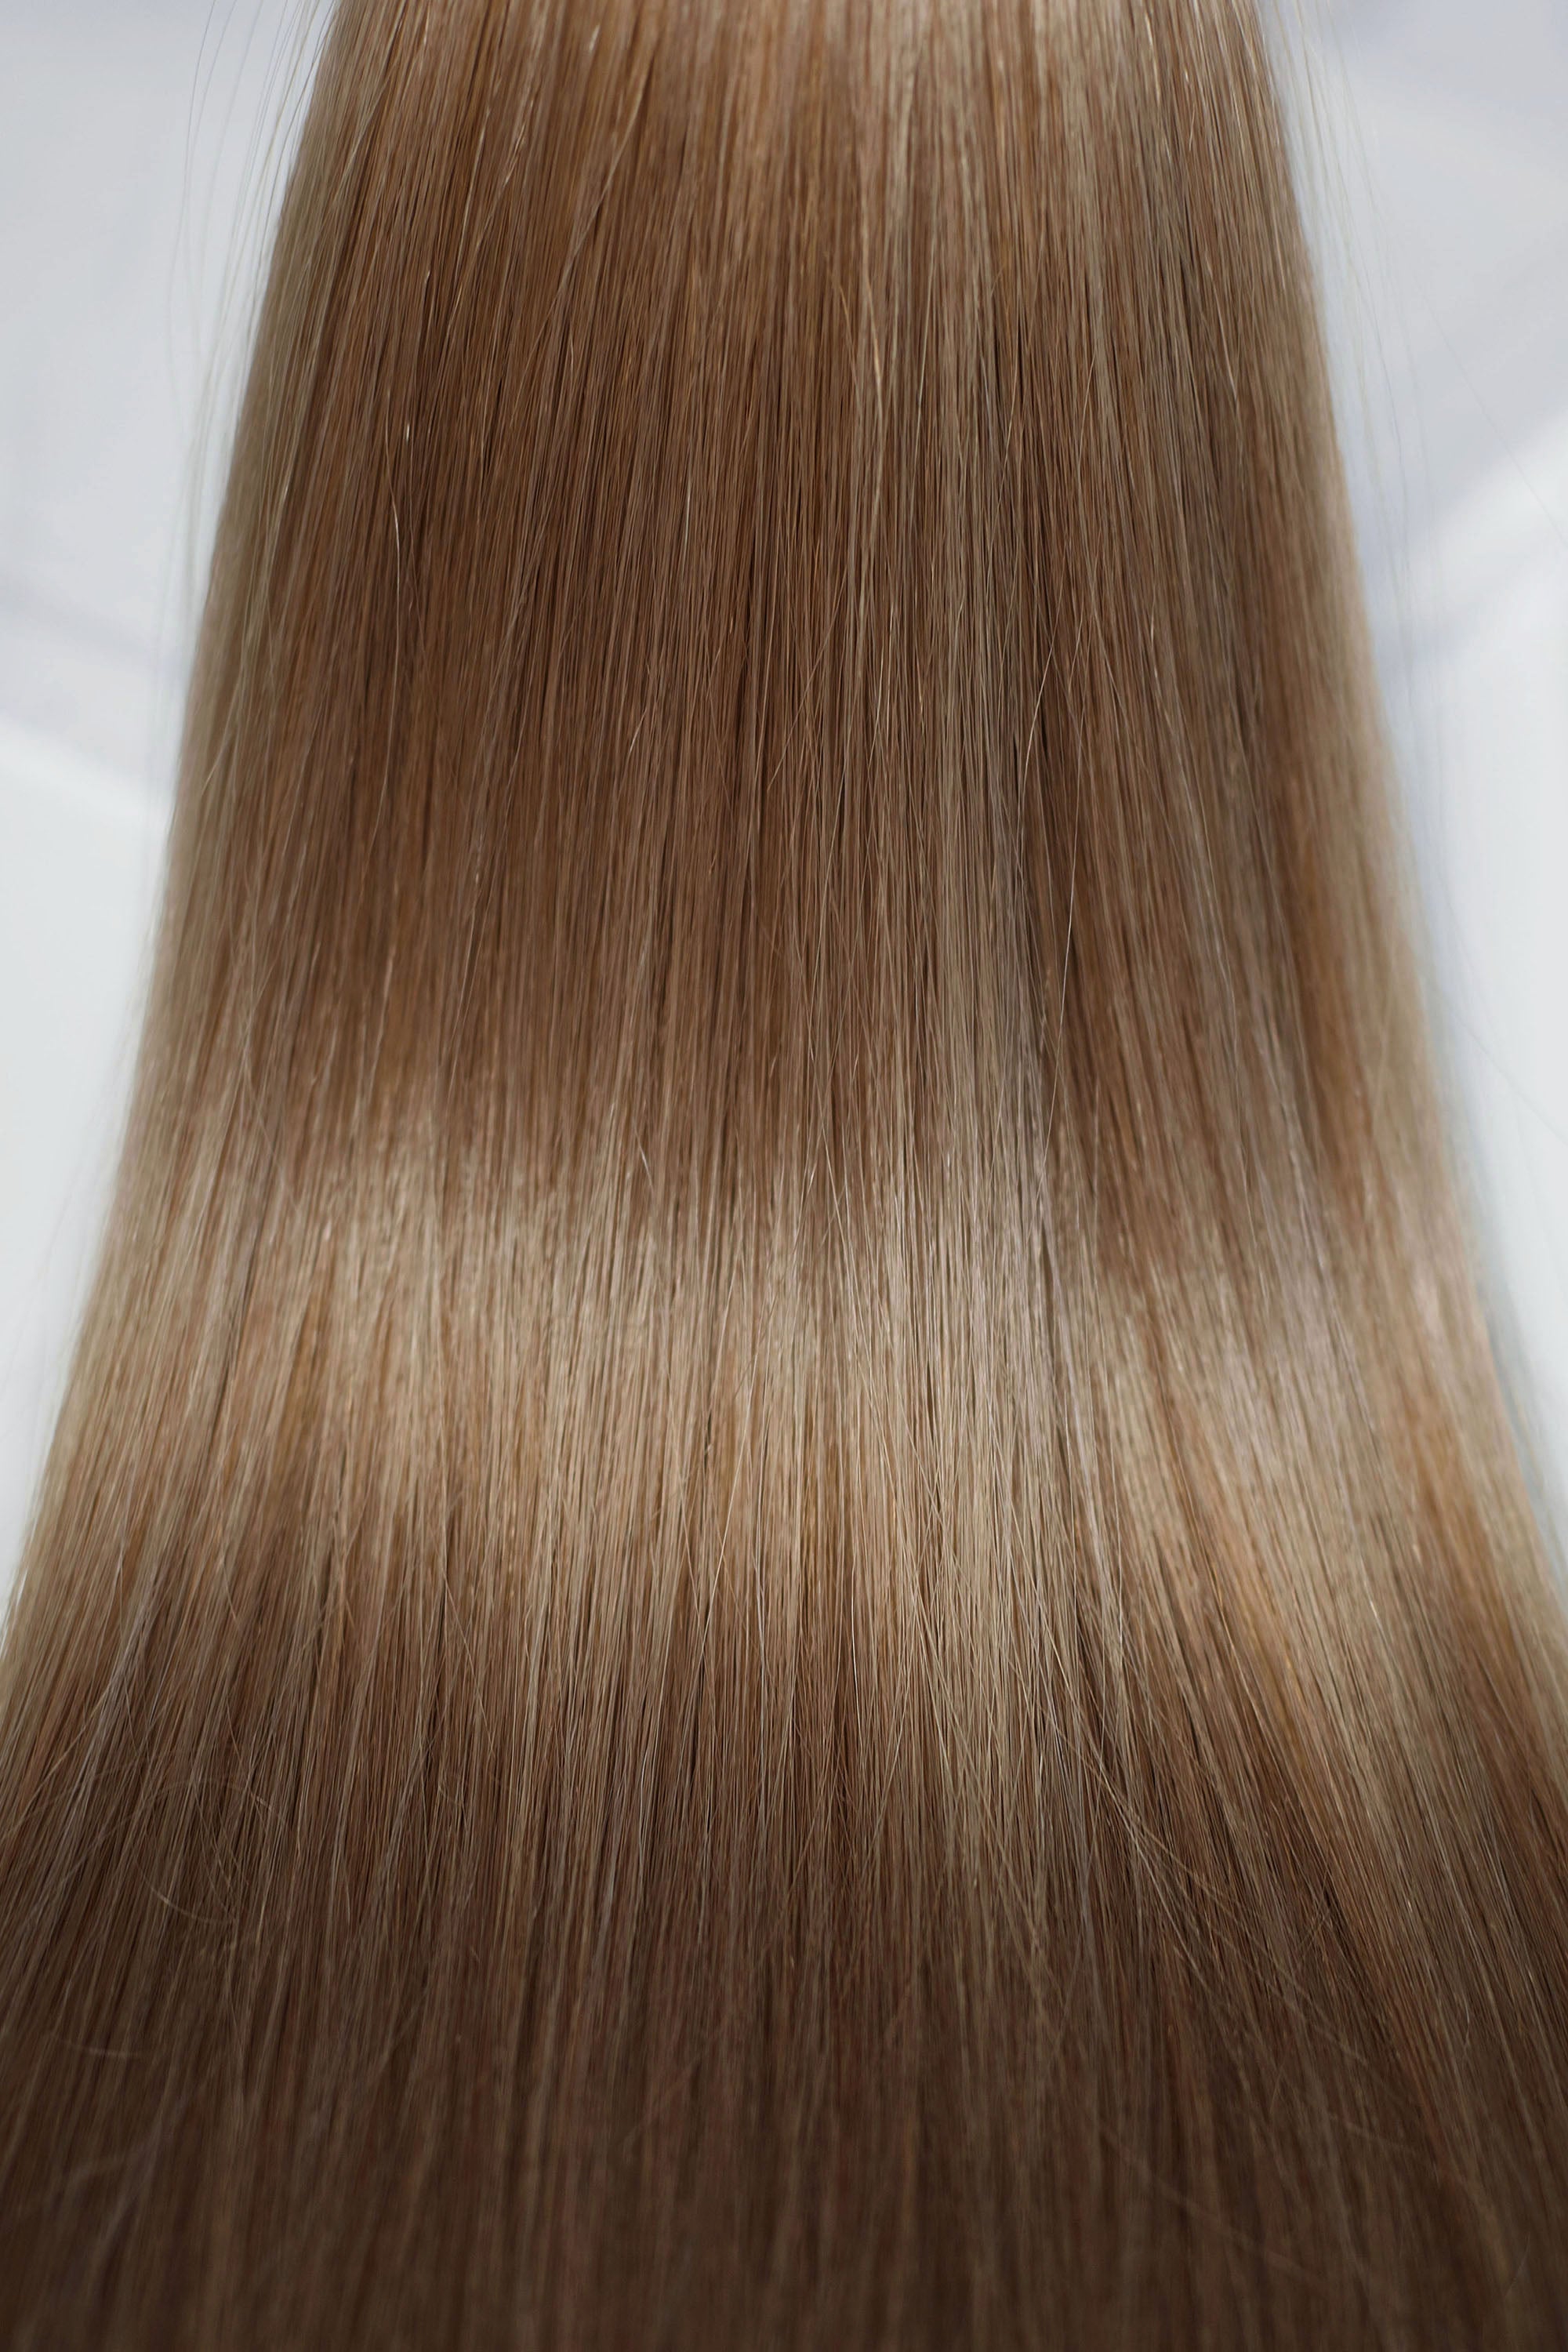 Behair professional Bulk hair "Premium" 26" (65cm) Natural Straight Light Ash Brown #10 - 25g hair extensions